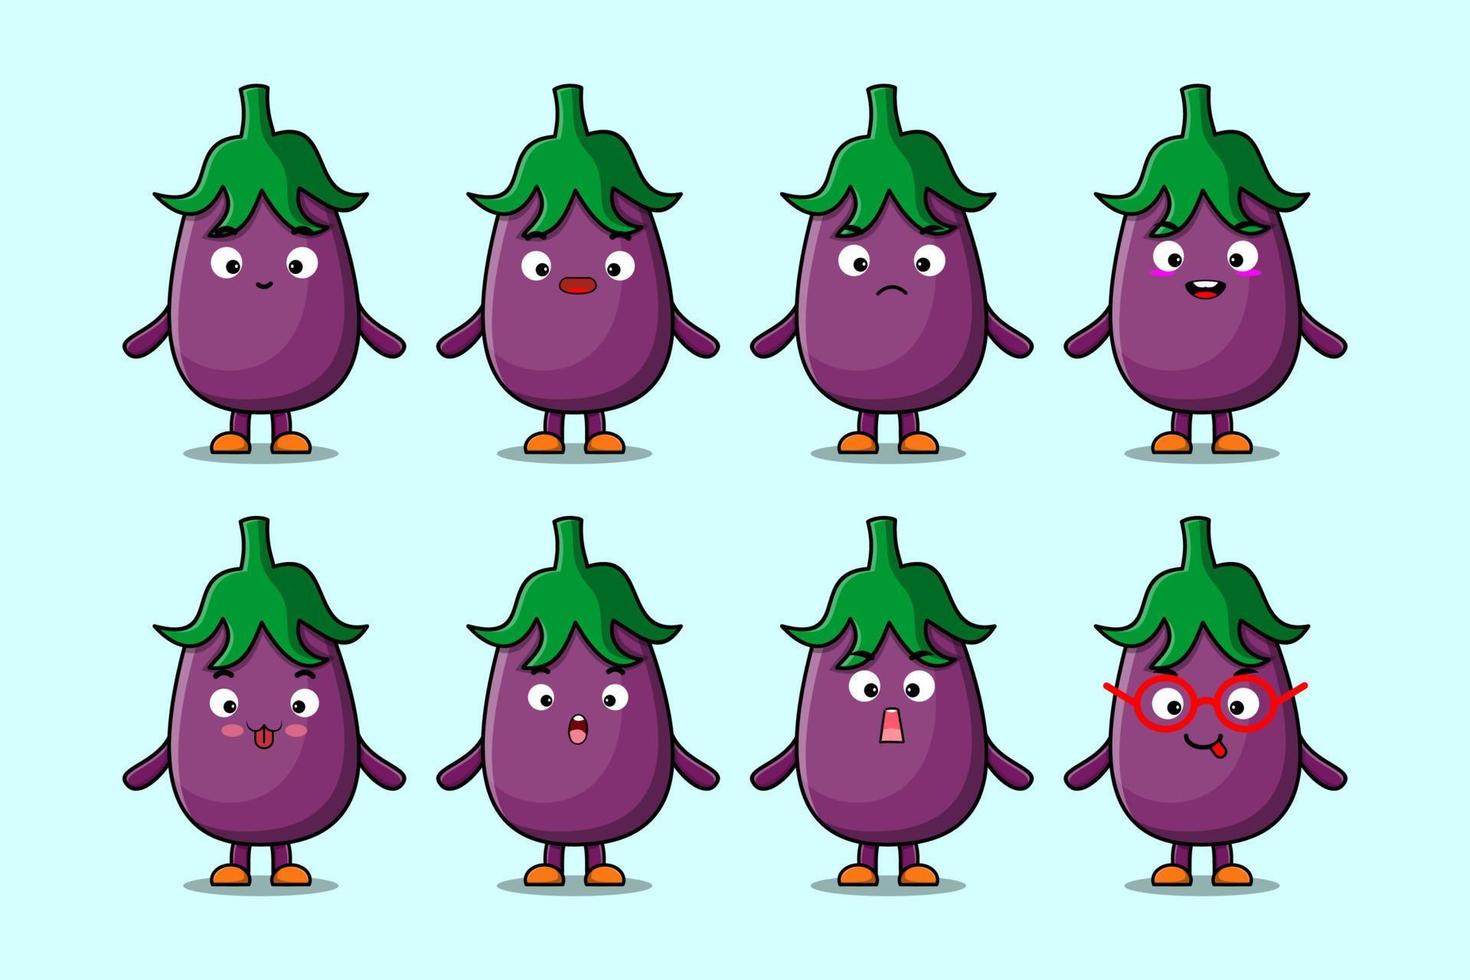 définir différentes expressions de dessin animé d'aubergine kawaii vecteur